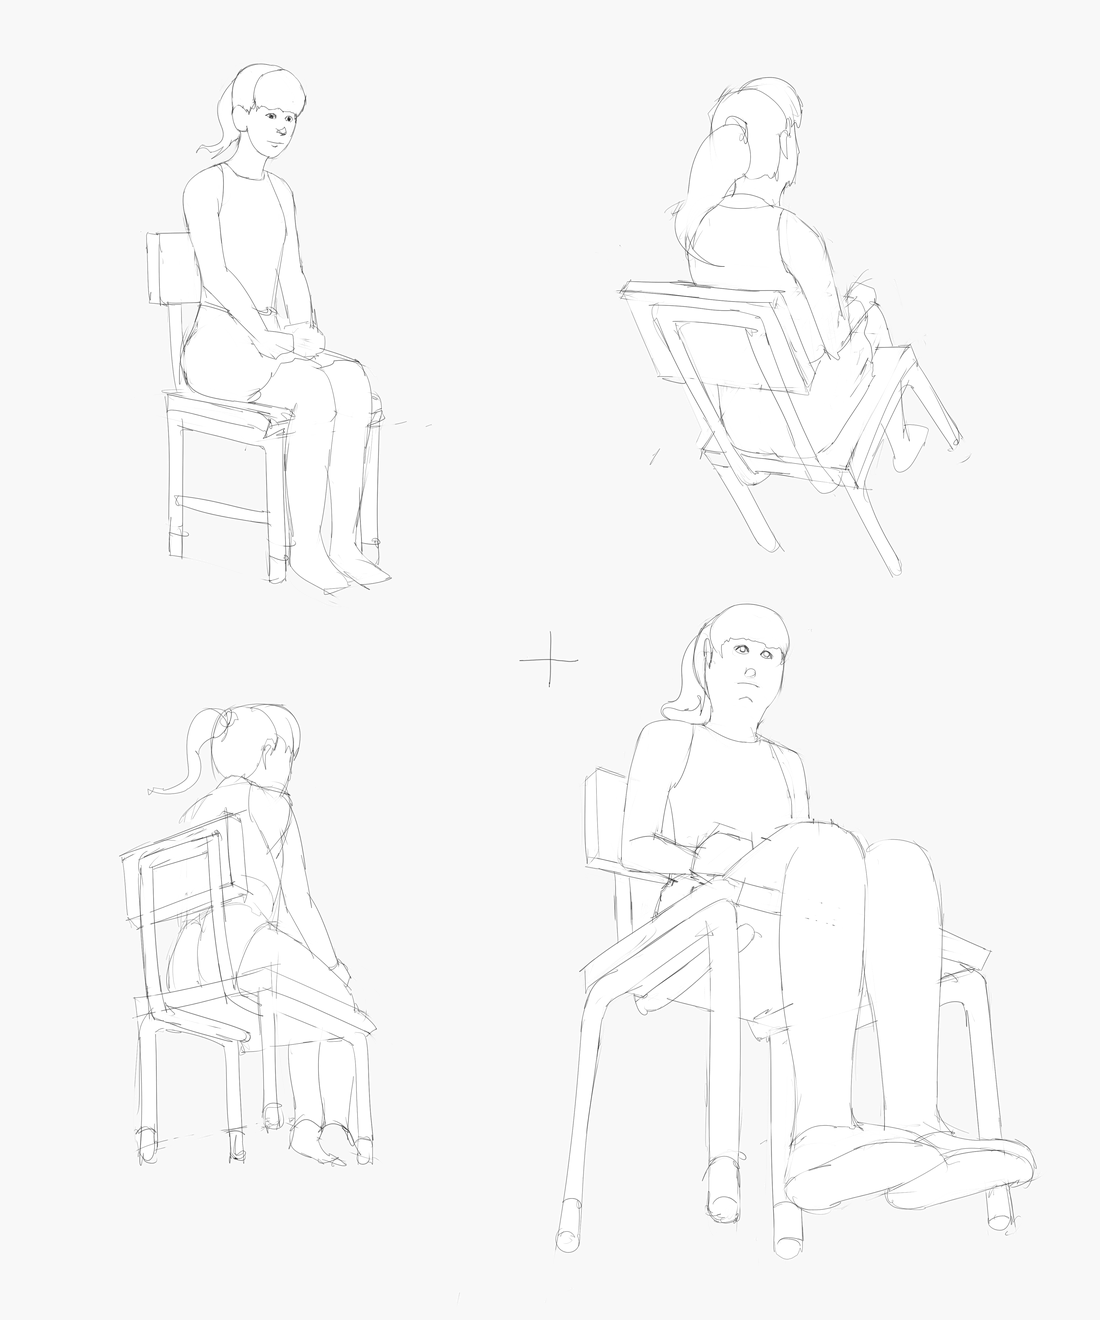 最速でなんでも描けるようになる キャラ作画の技術 その３７ 最速本の5 1 椅子と人 椅子に座っているbちゃんを全身で描く ミリタリーな人 物 他の色々な物を描くためのブログ